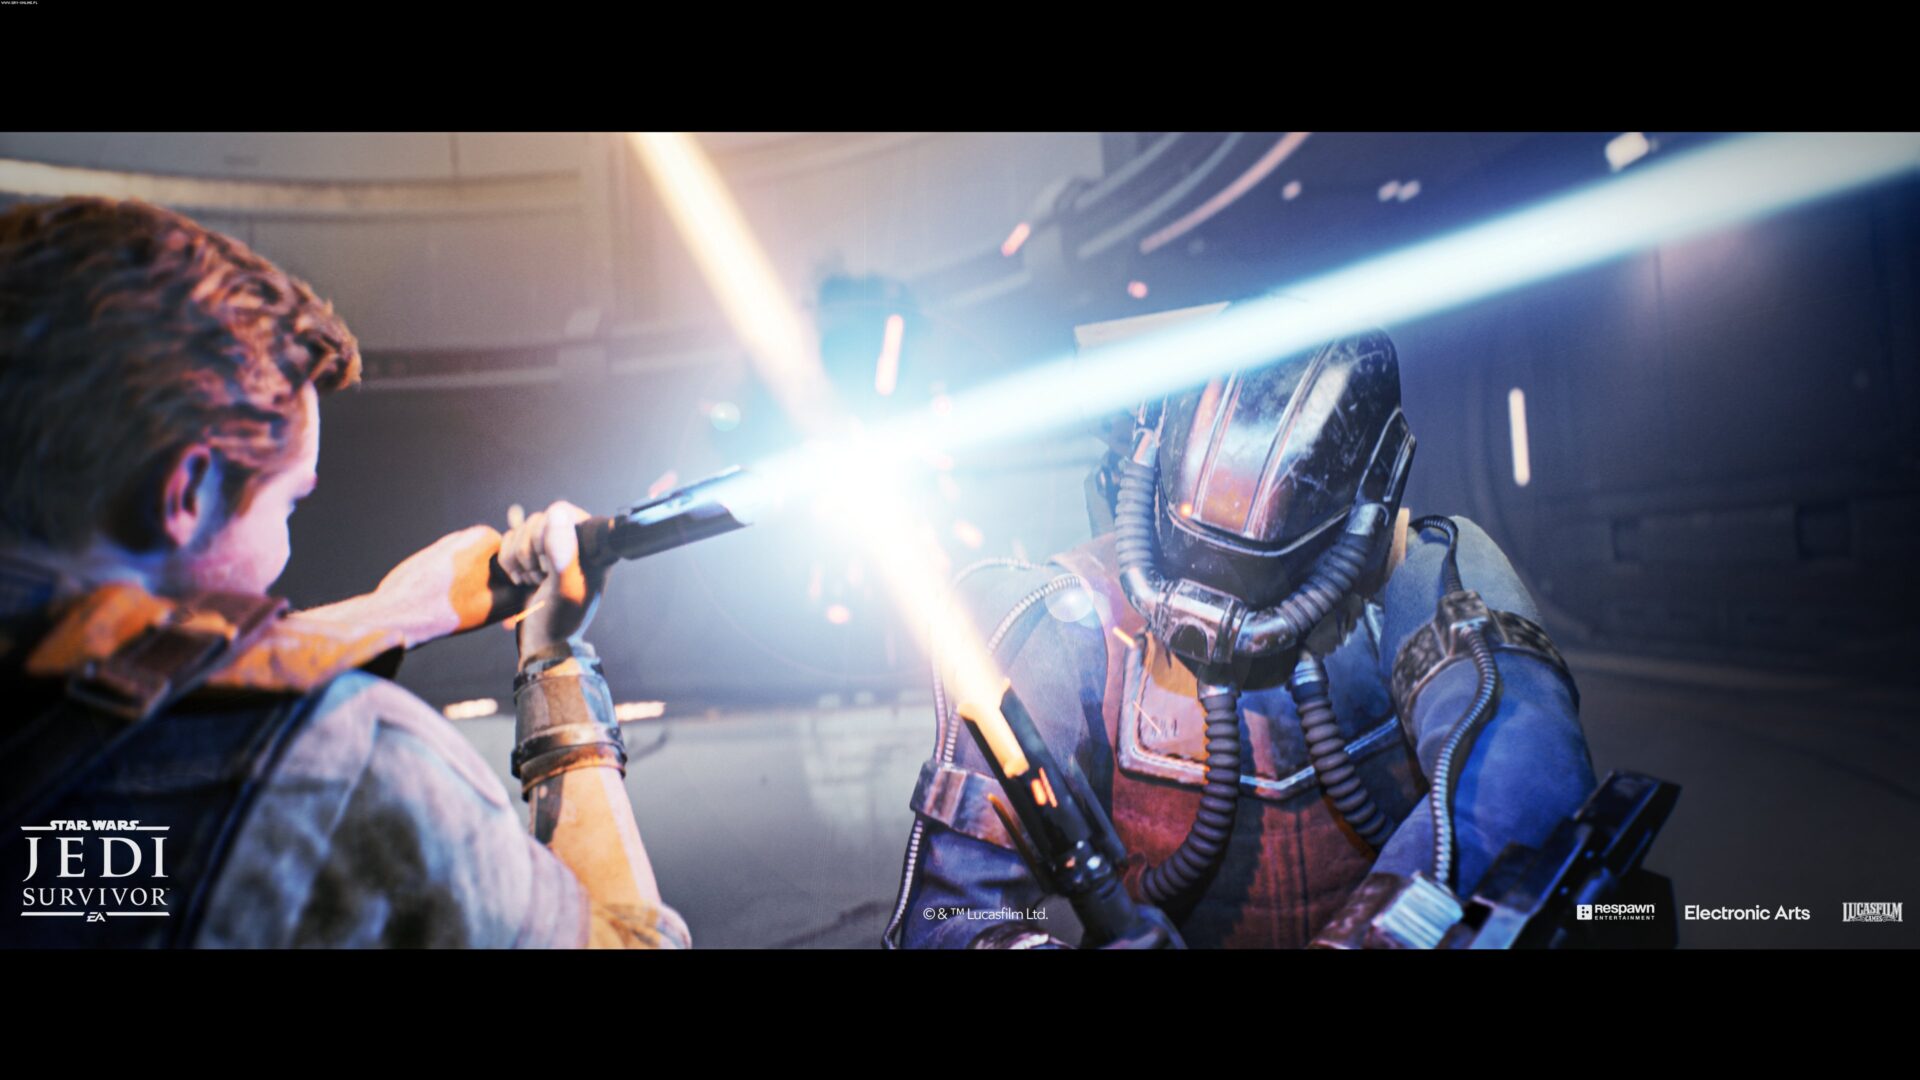 Imagem mostra cena do jogo Star Wars Jedi: Survivor